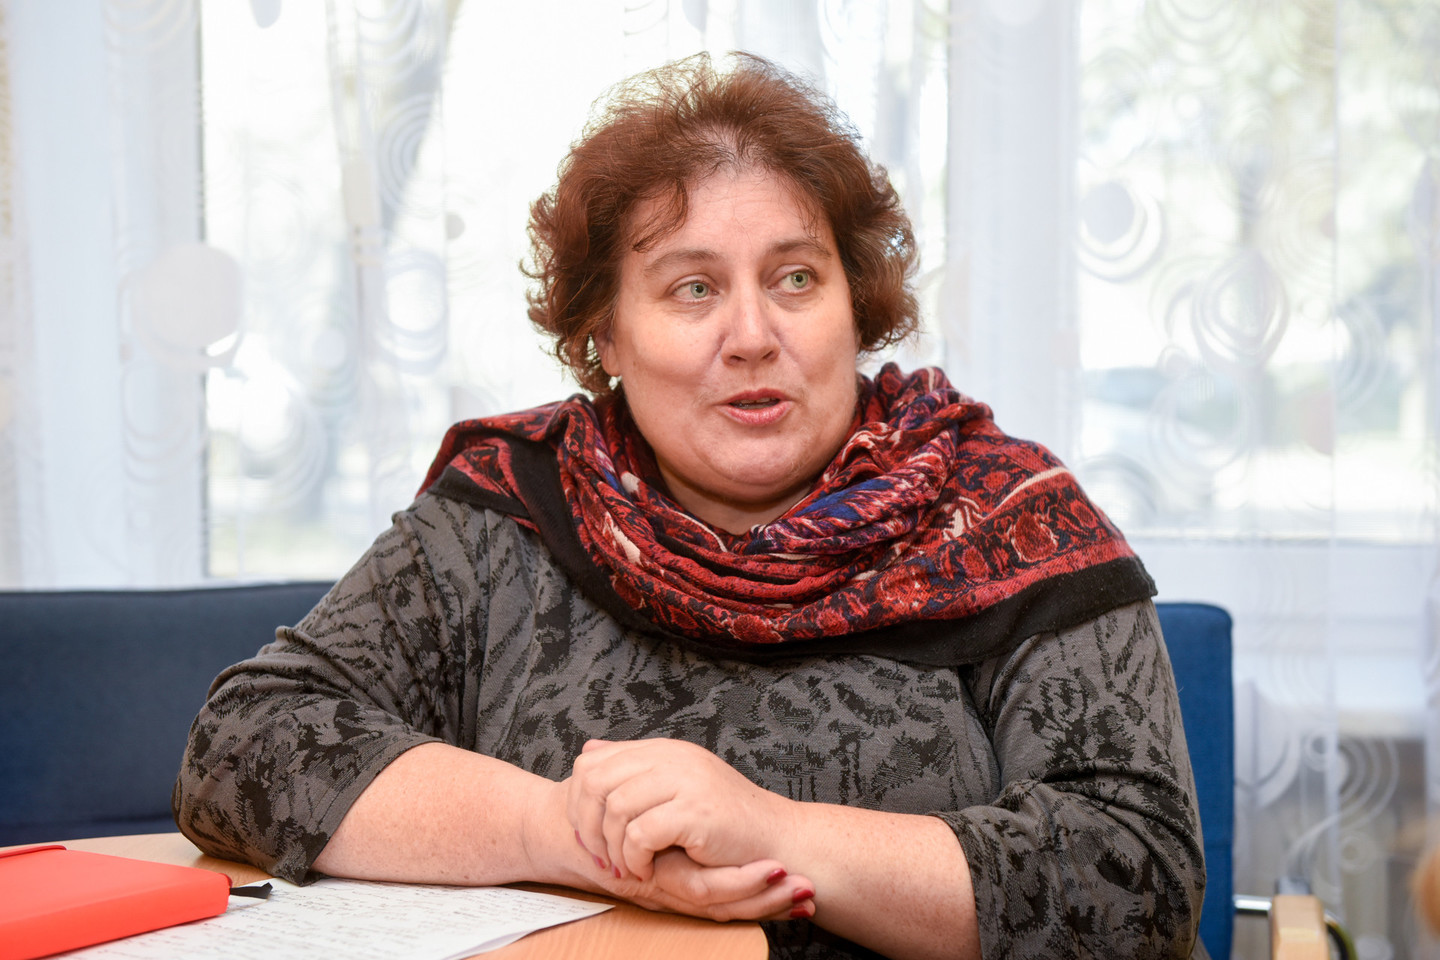 Salininkų bendruomenės asociacijos pirmininkė Ramutė Nalivaikienė sako, kad gyvenimas prie oro uosto sukelia daug problemų.<br>D.Umbraso nuotr.